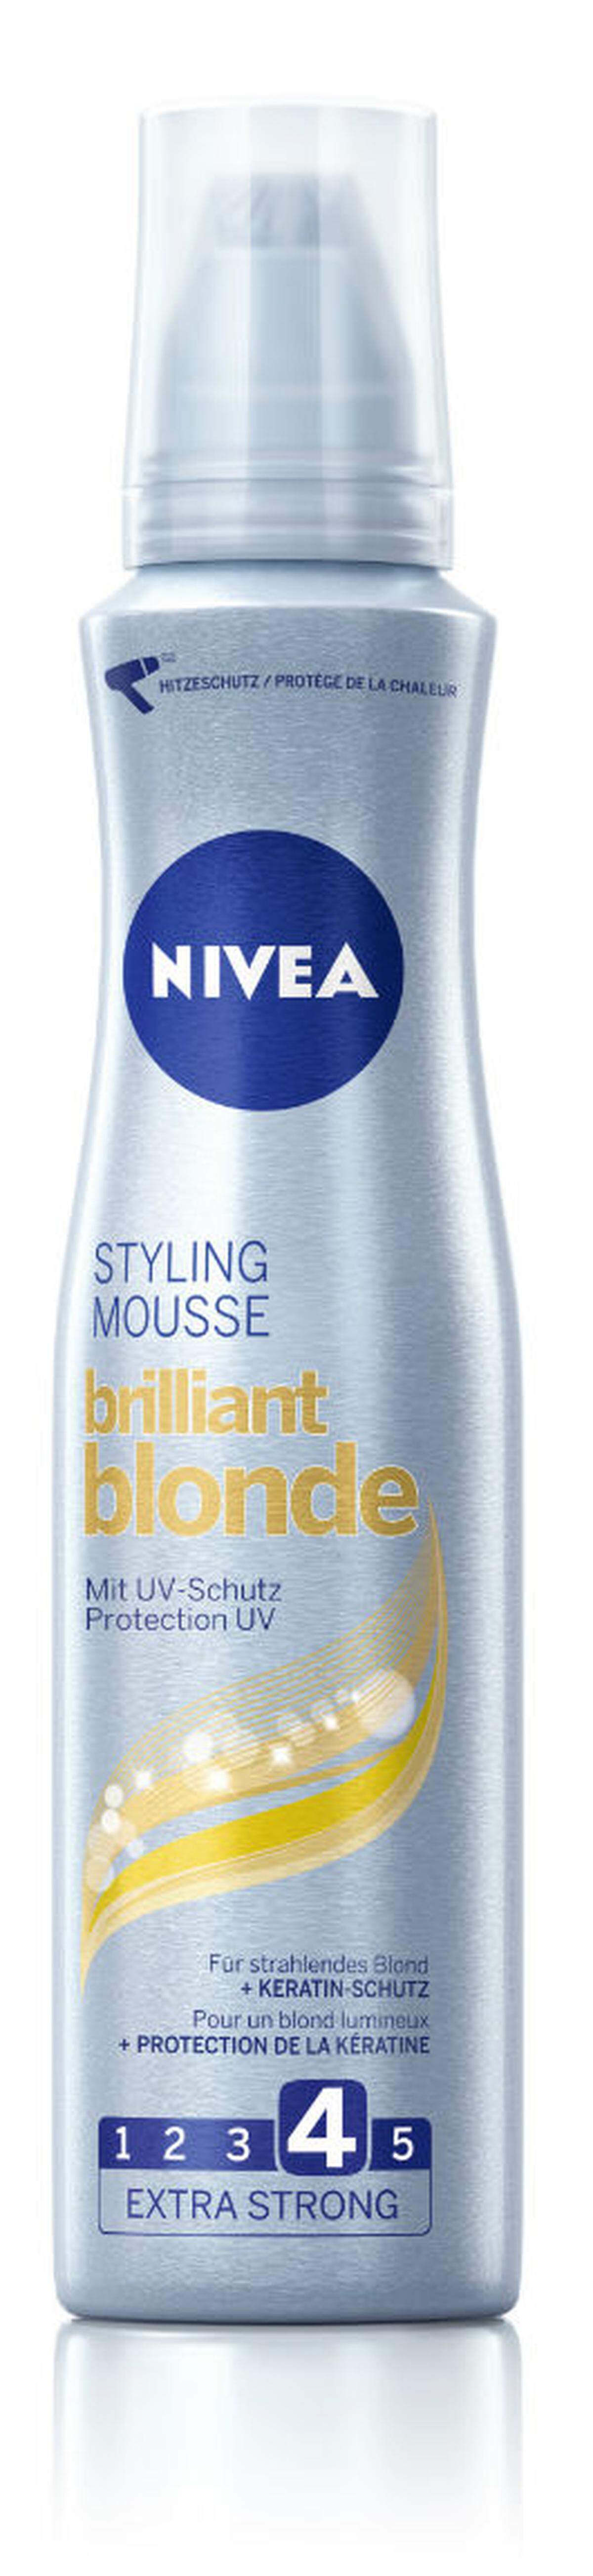 Das Nivea Brilliant Blonde Styling Mousse ist ein Schaumfestiger, der dem Haar Halt und Fülle verleihen soll. Der integrierte Hitzeschutz schützt das Haar vor dem Austrocknen, 2,95 Euro. 